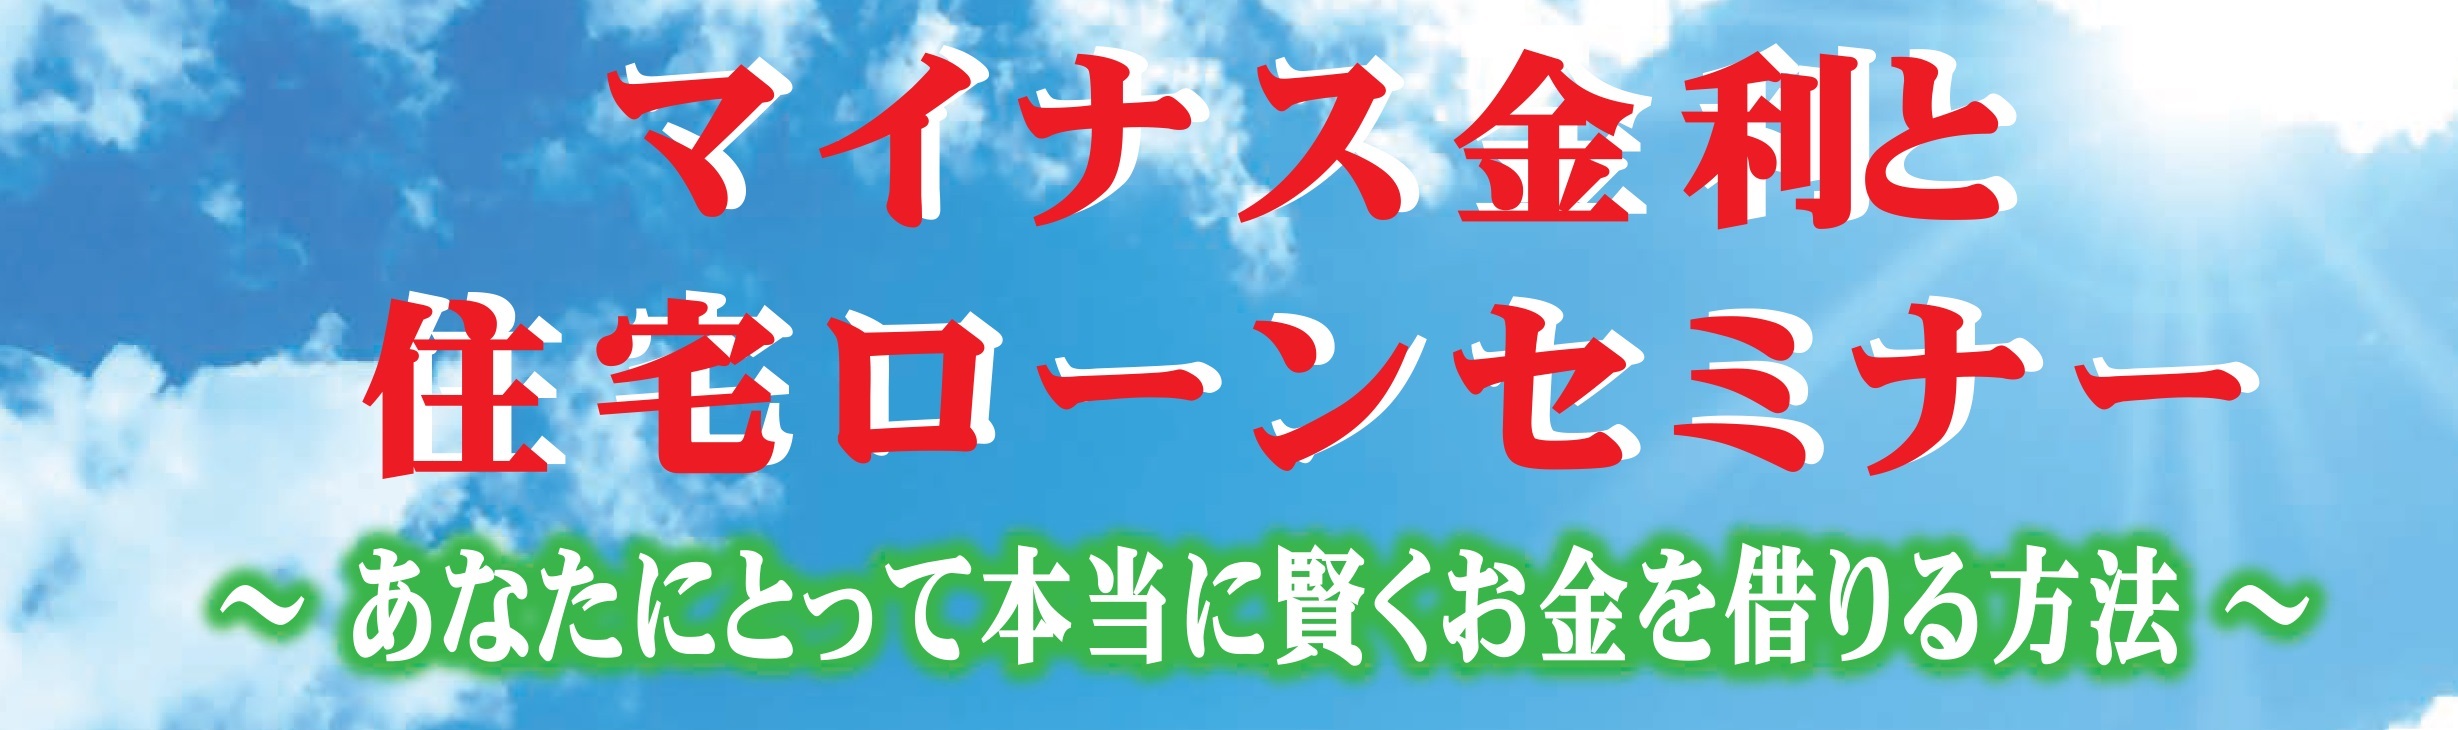 3月27日(日)マイナス金利と住宅ローンセミナー 【無料】